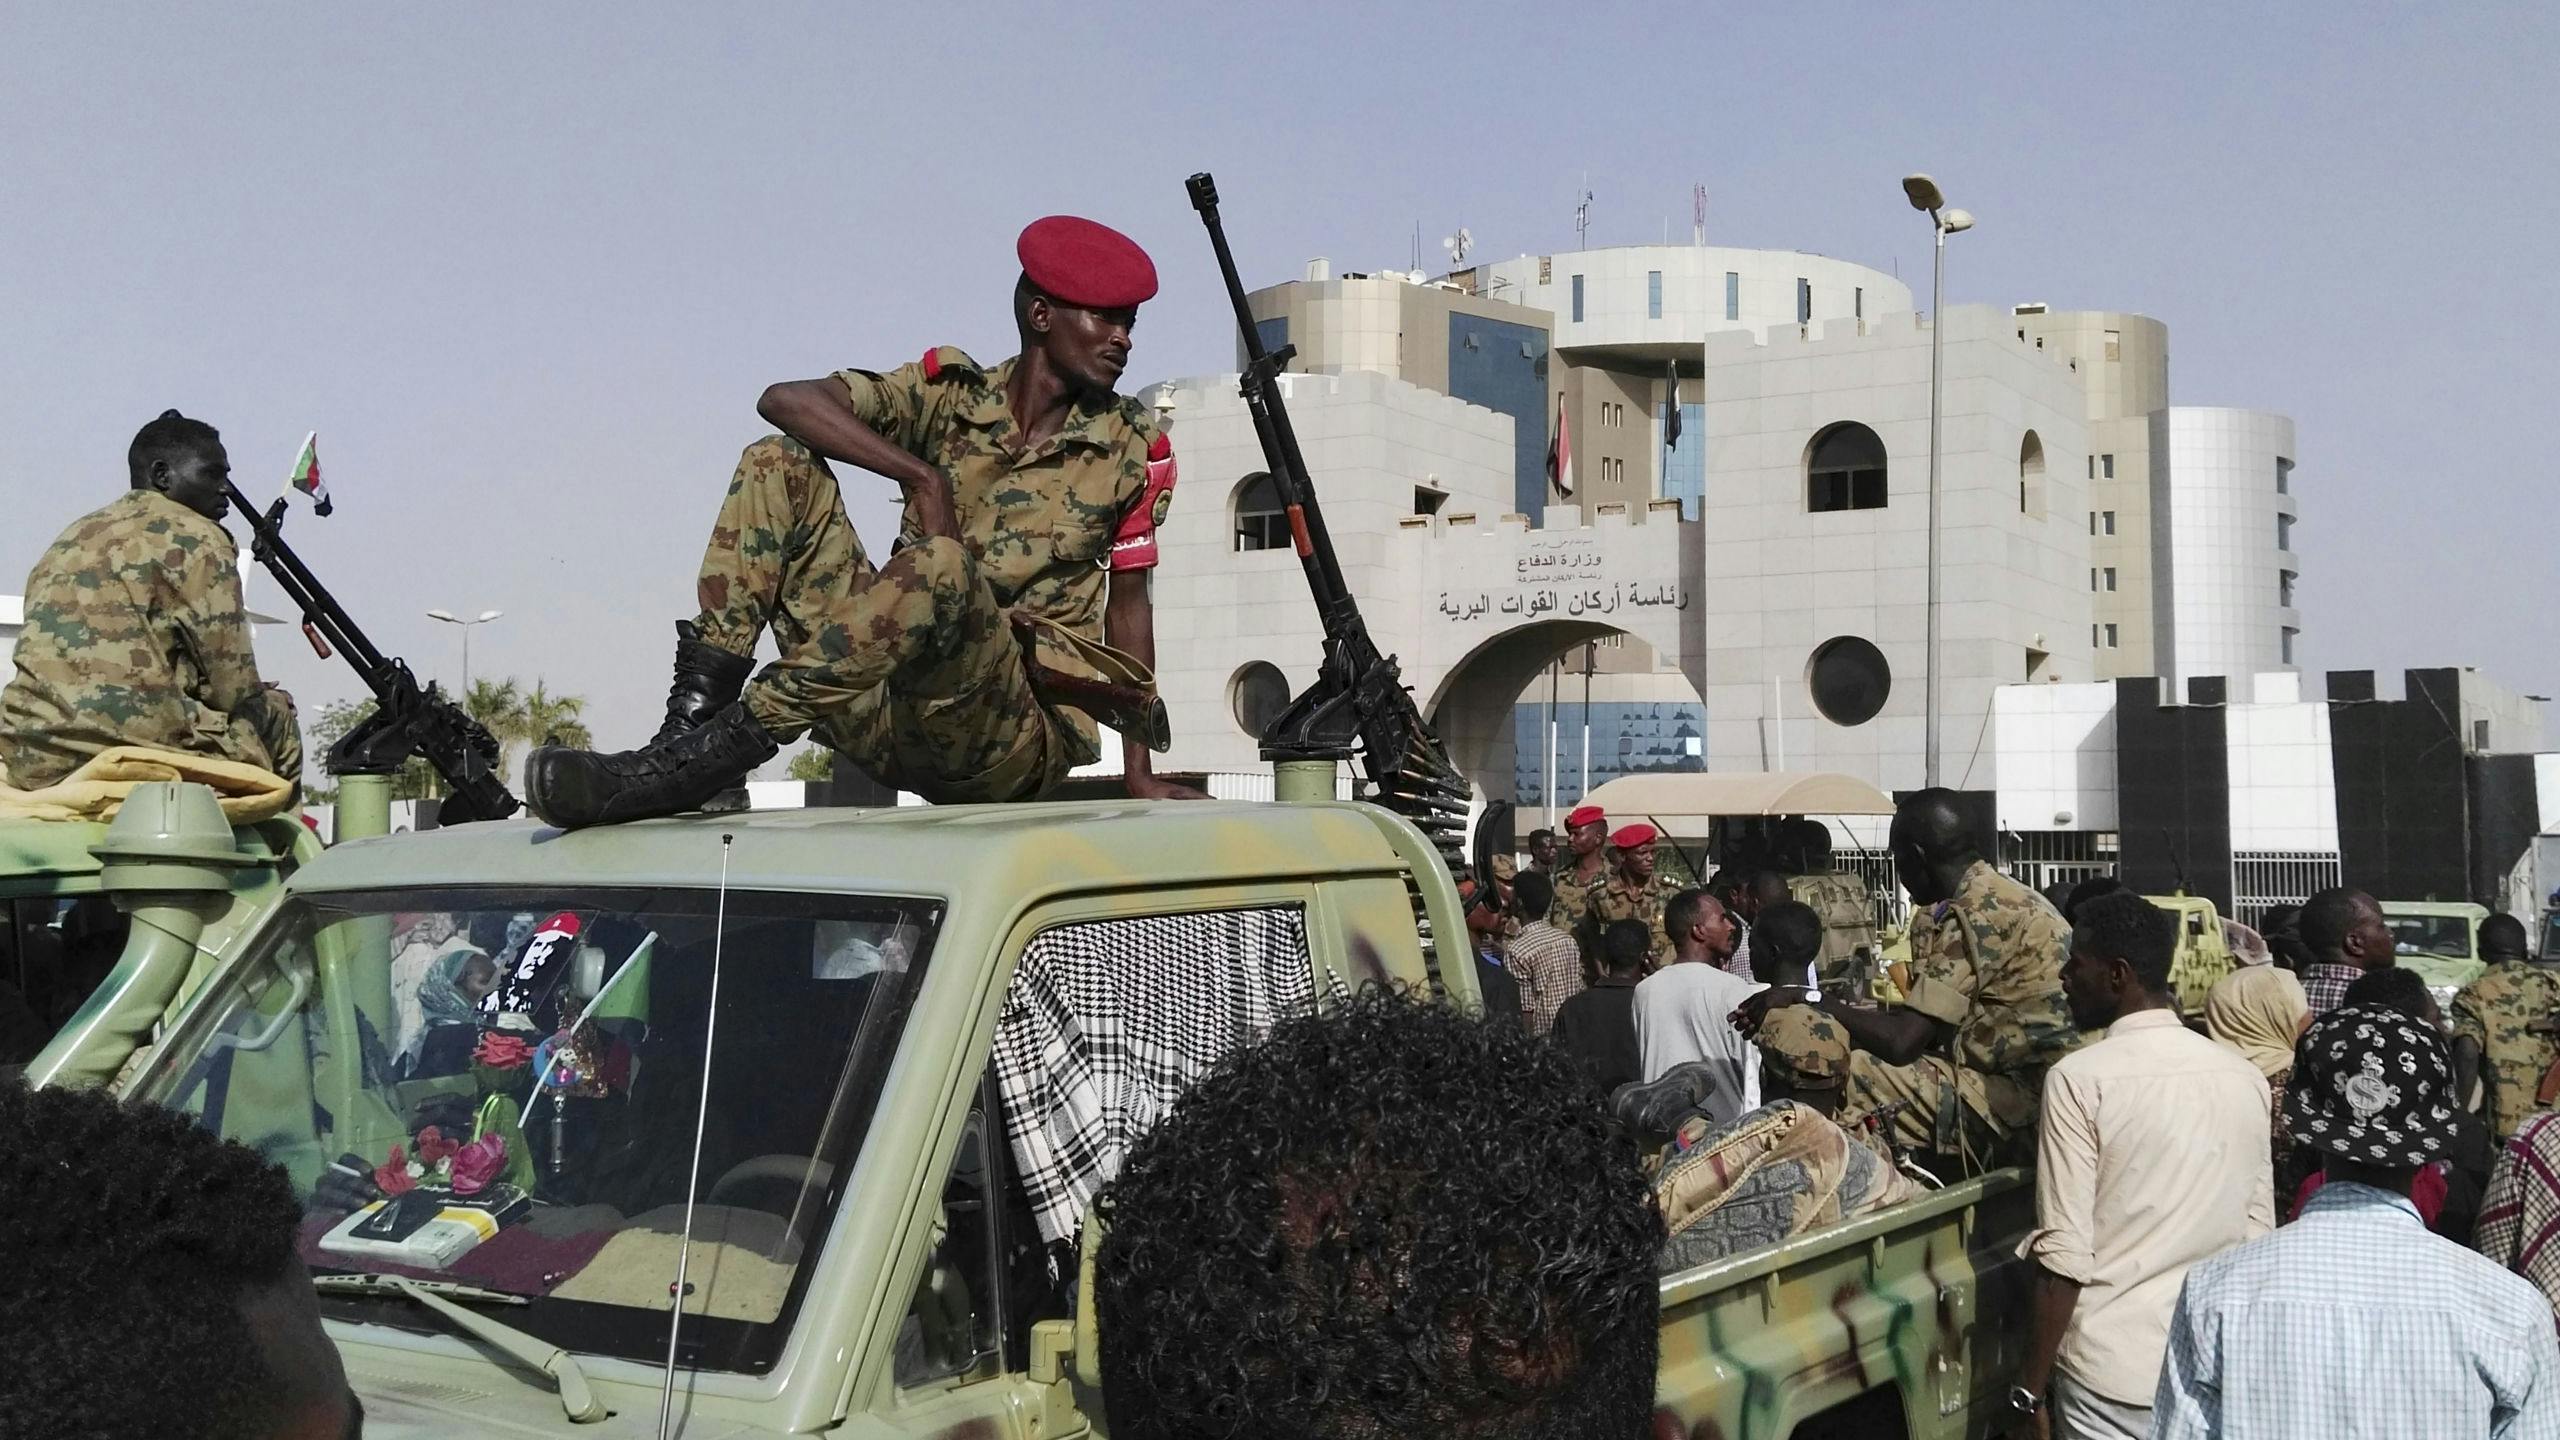 Soedanese soldaten kijken hoe een menigte zich verzamelt in een straat in Khartoem, de hoofdstad van Soedan.